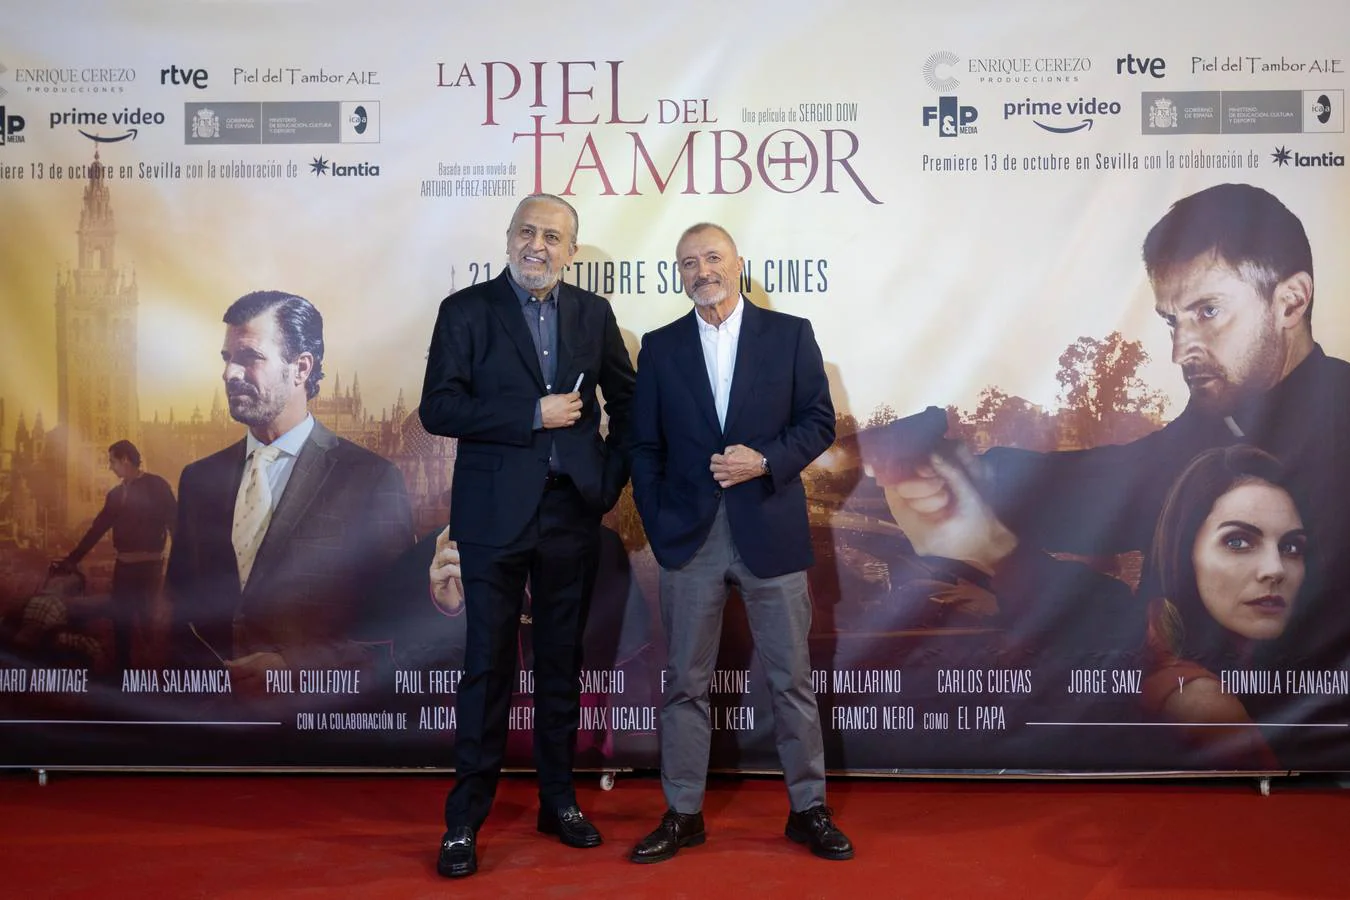 El director, los actores y el autor de la novela asistieron al estreno en Sevilla